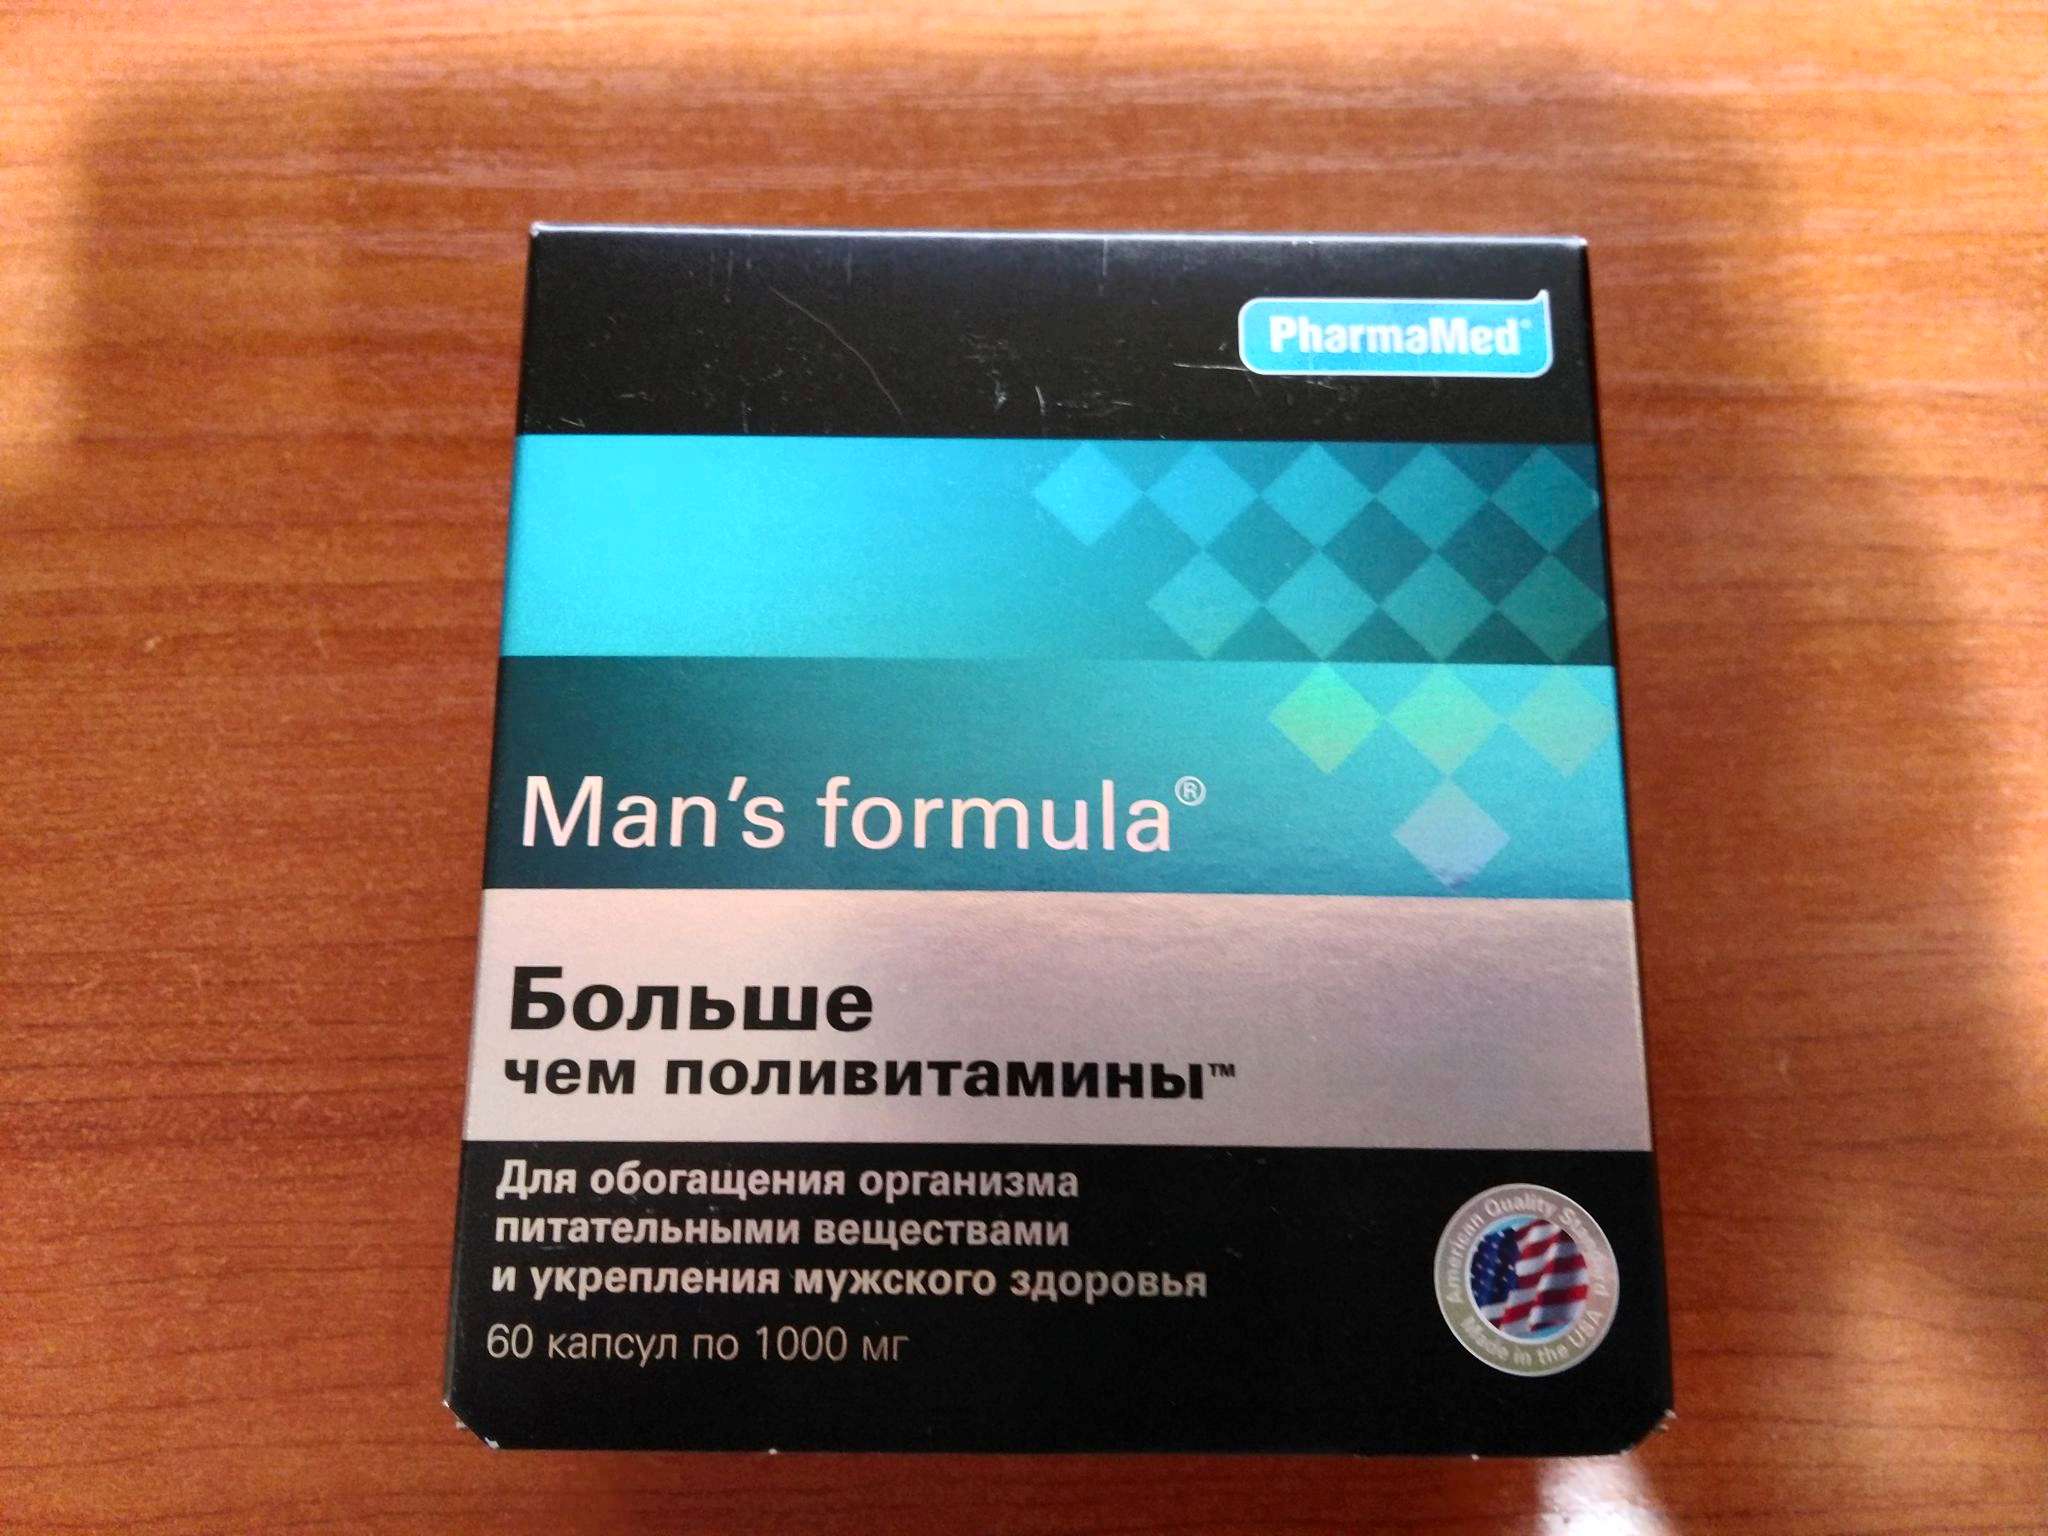 Купить менс формула форте. Менс потенциал форте. Mans Formula витамины для мужчин. Formula man's (больше,чем поливитамины капс n60 Вн ). Витамины man's Formula потенциал форте.